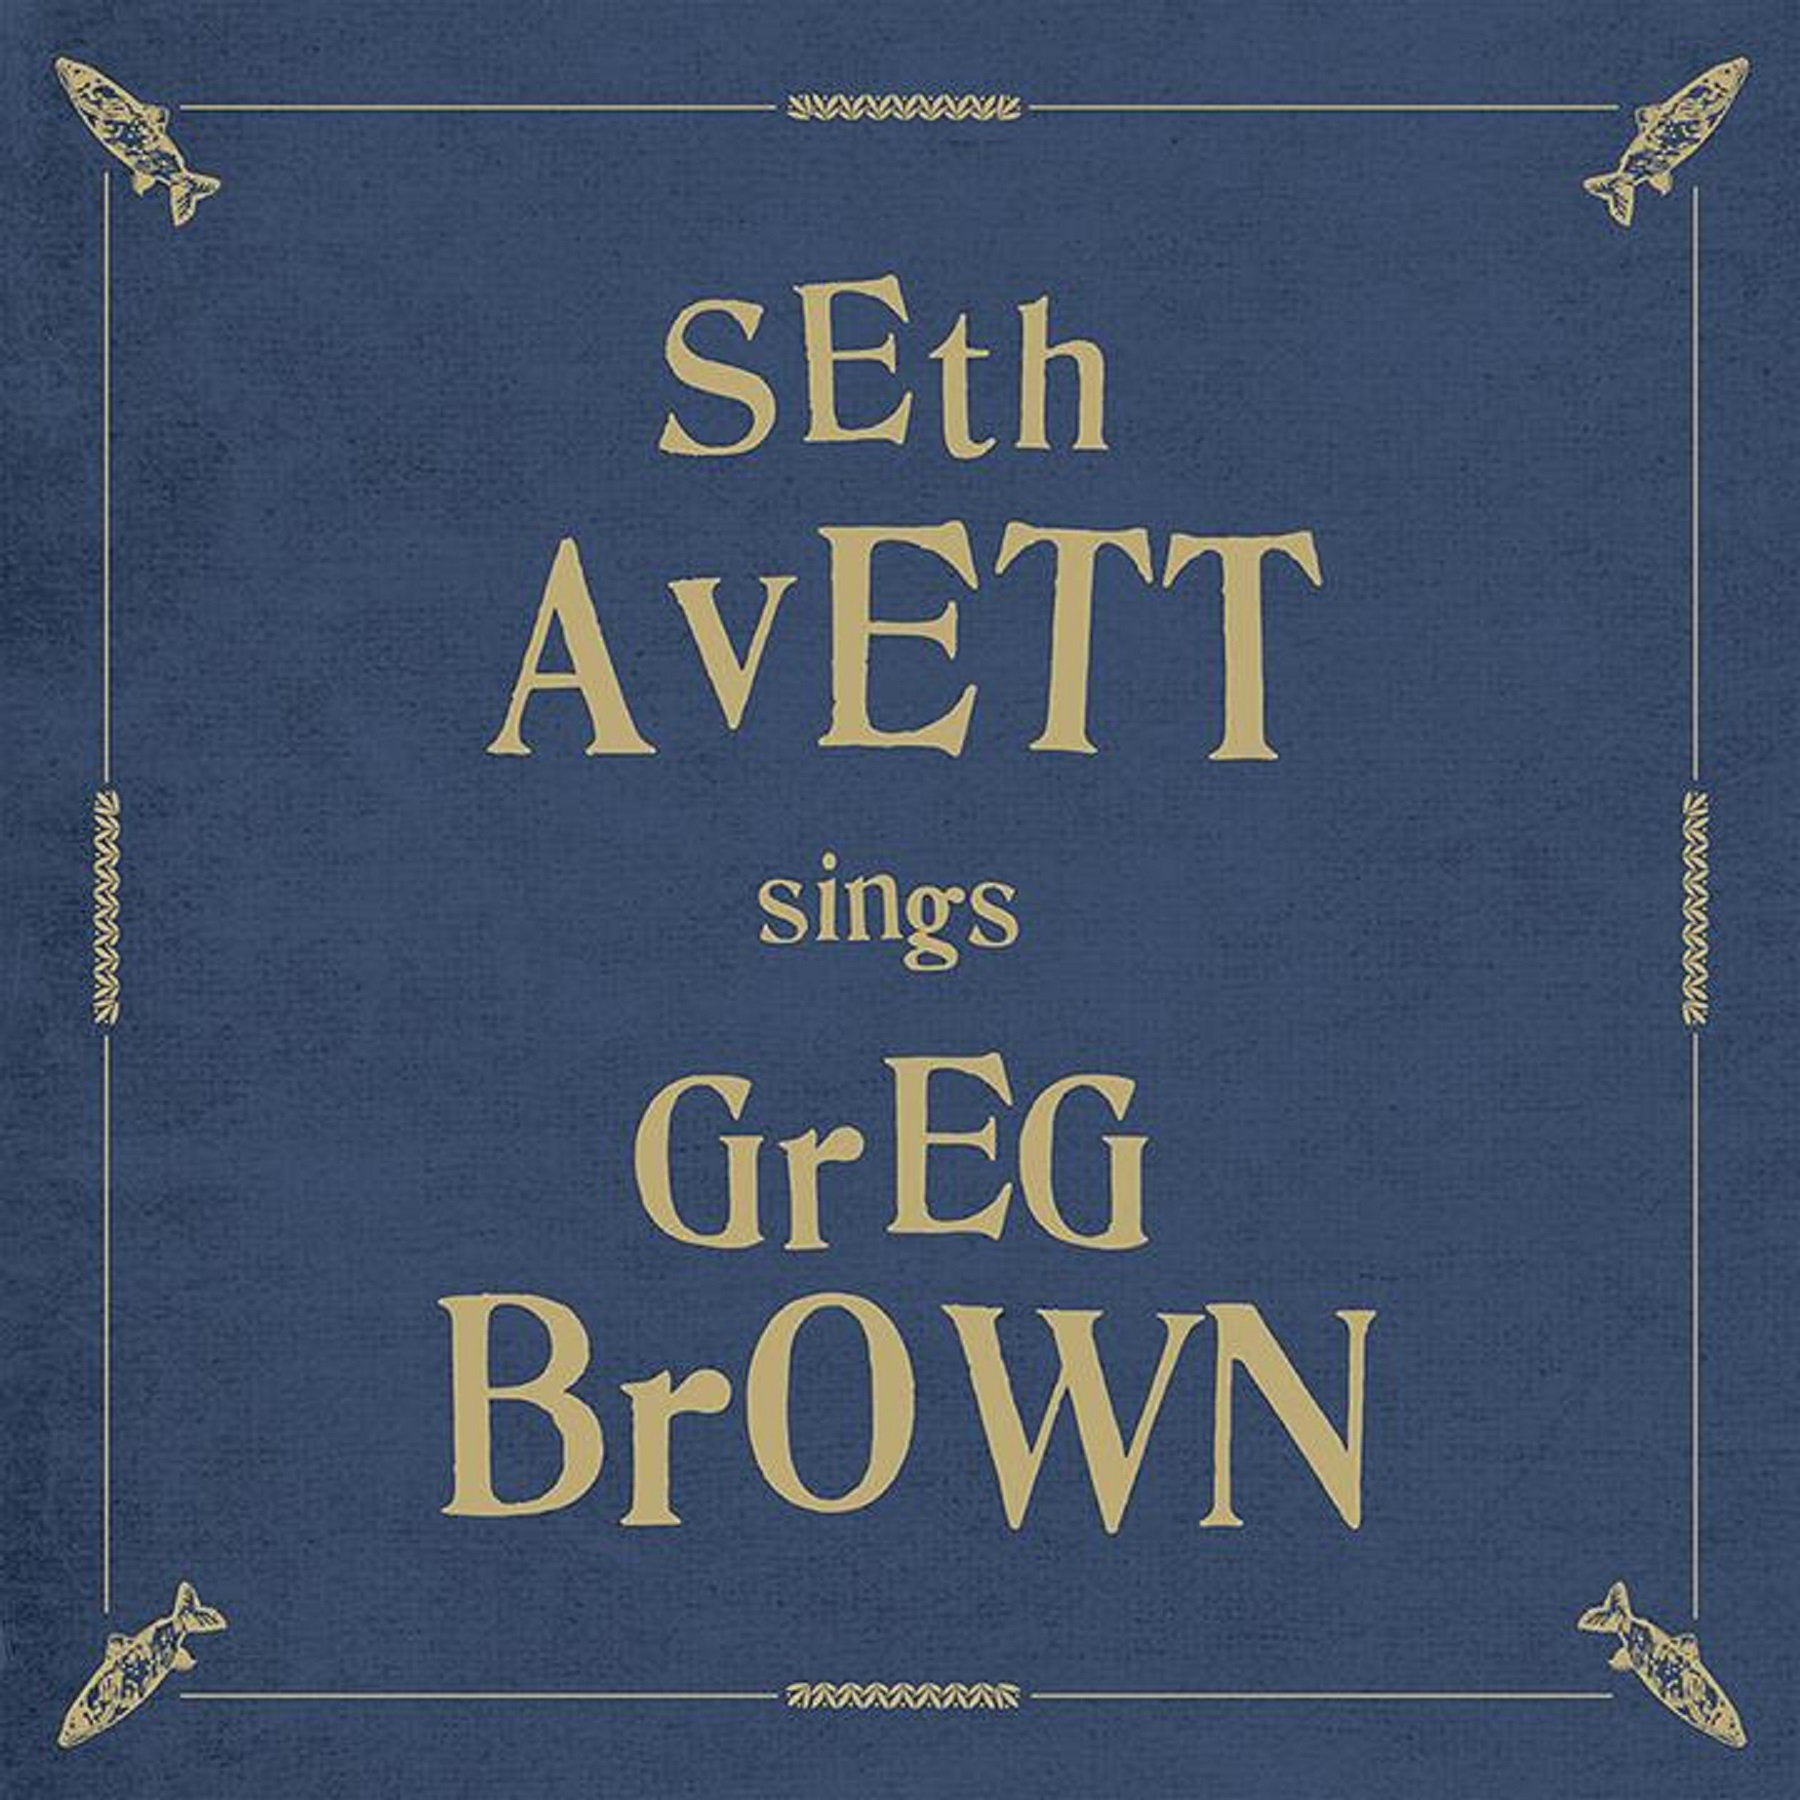 "Seth Avett Sings Greg Brown" available November 4th